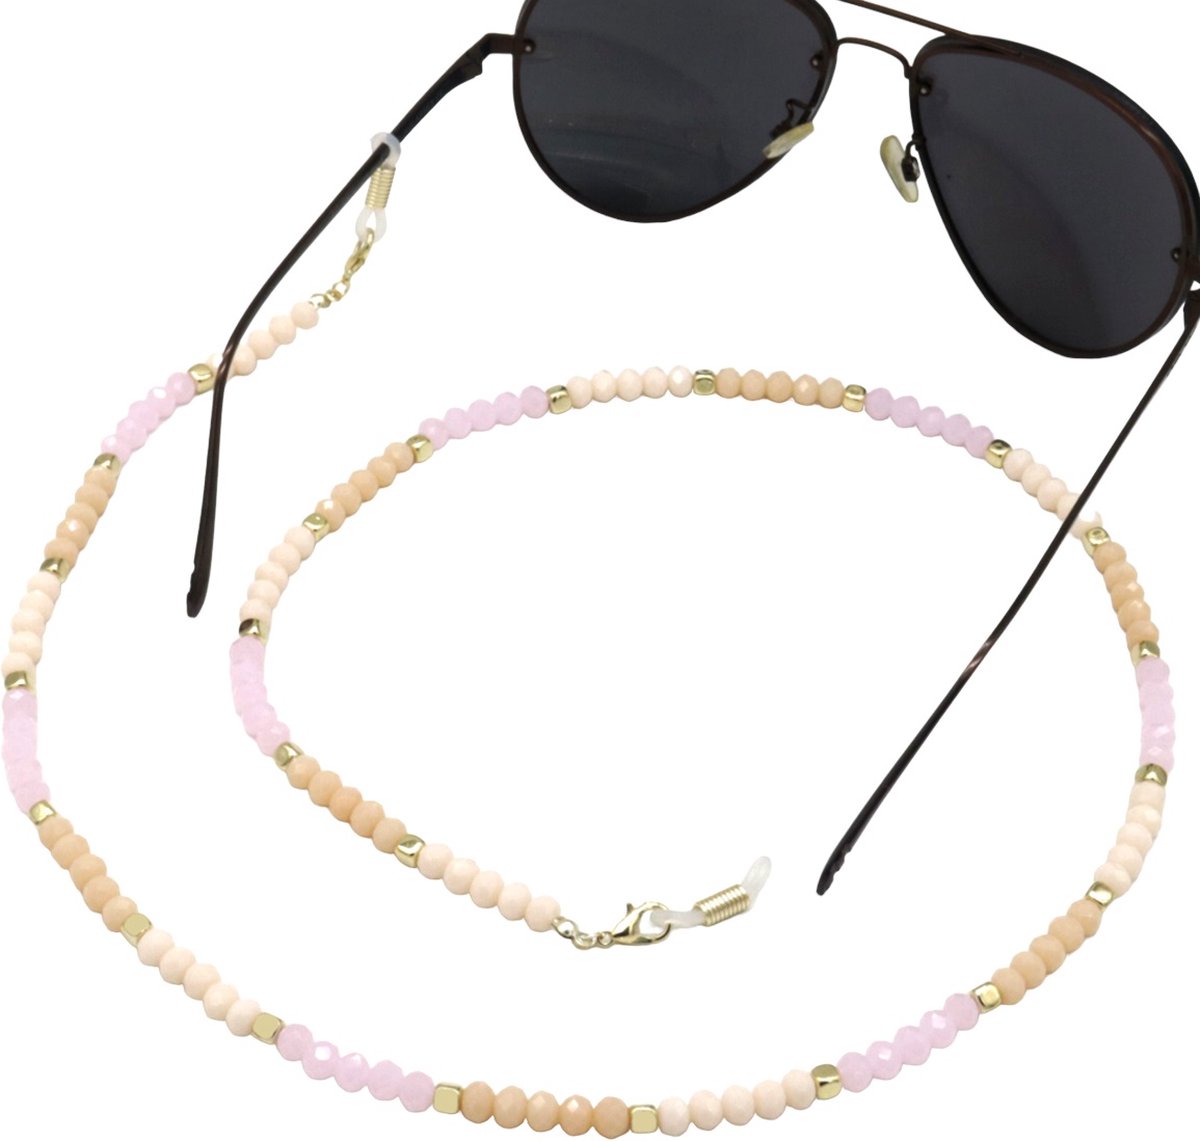 Zonnebrilkoord- Brillenkoord- Zonnebril koord- Pastel- Roze- Glaskralen- Dames- Zomer- Sunglass chain